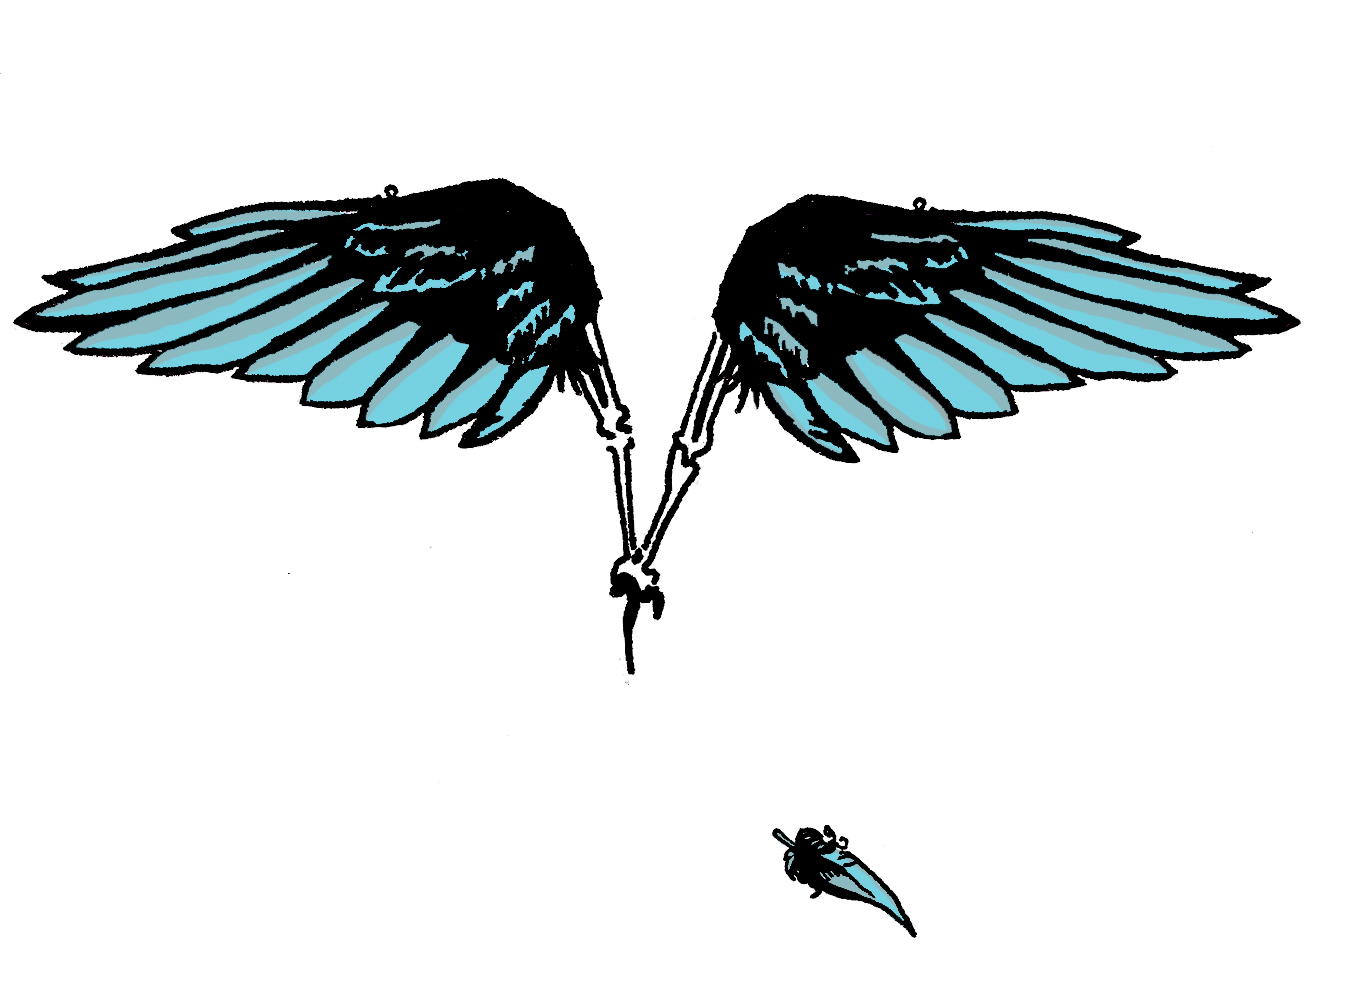 Xristina LegendTattoo - Valkyrie wings tattoo #tattoo #tattoos  #valkyriewings #valkyriewingstattoo #valkyrie #linerwork #colorsplash  #redsplash #colortattoo #design #legendta2studio #legendtattooteam  #xristinalegendtattoo #loveit | Facebook